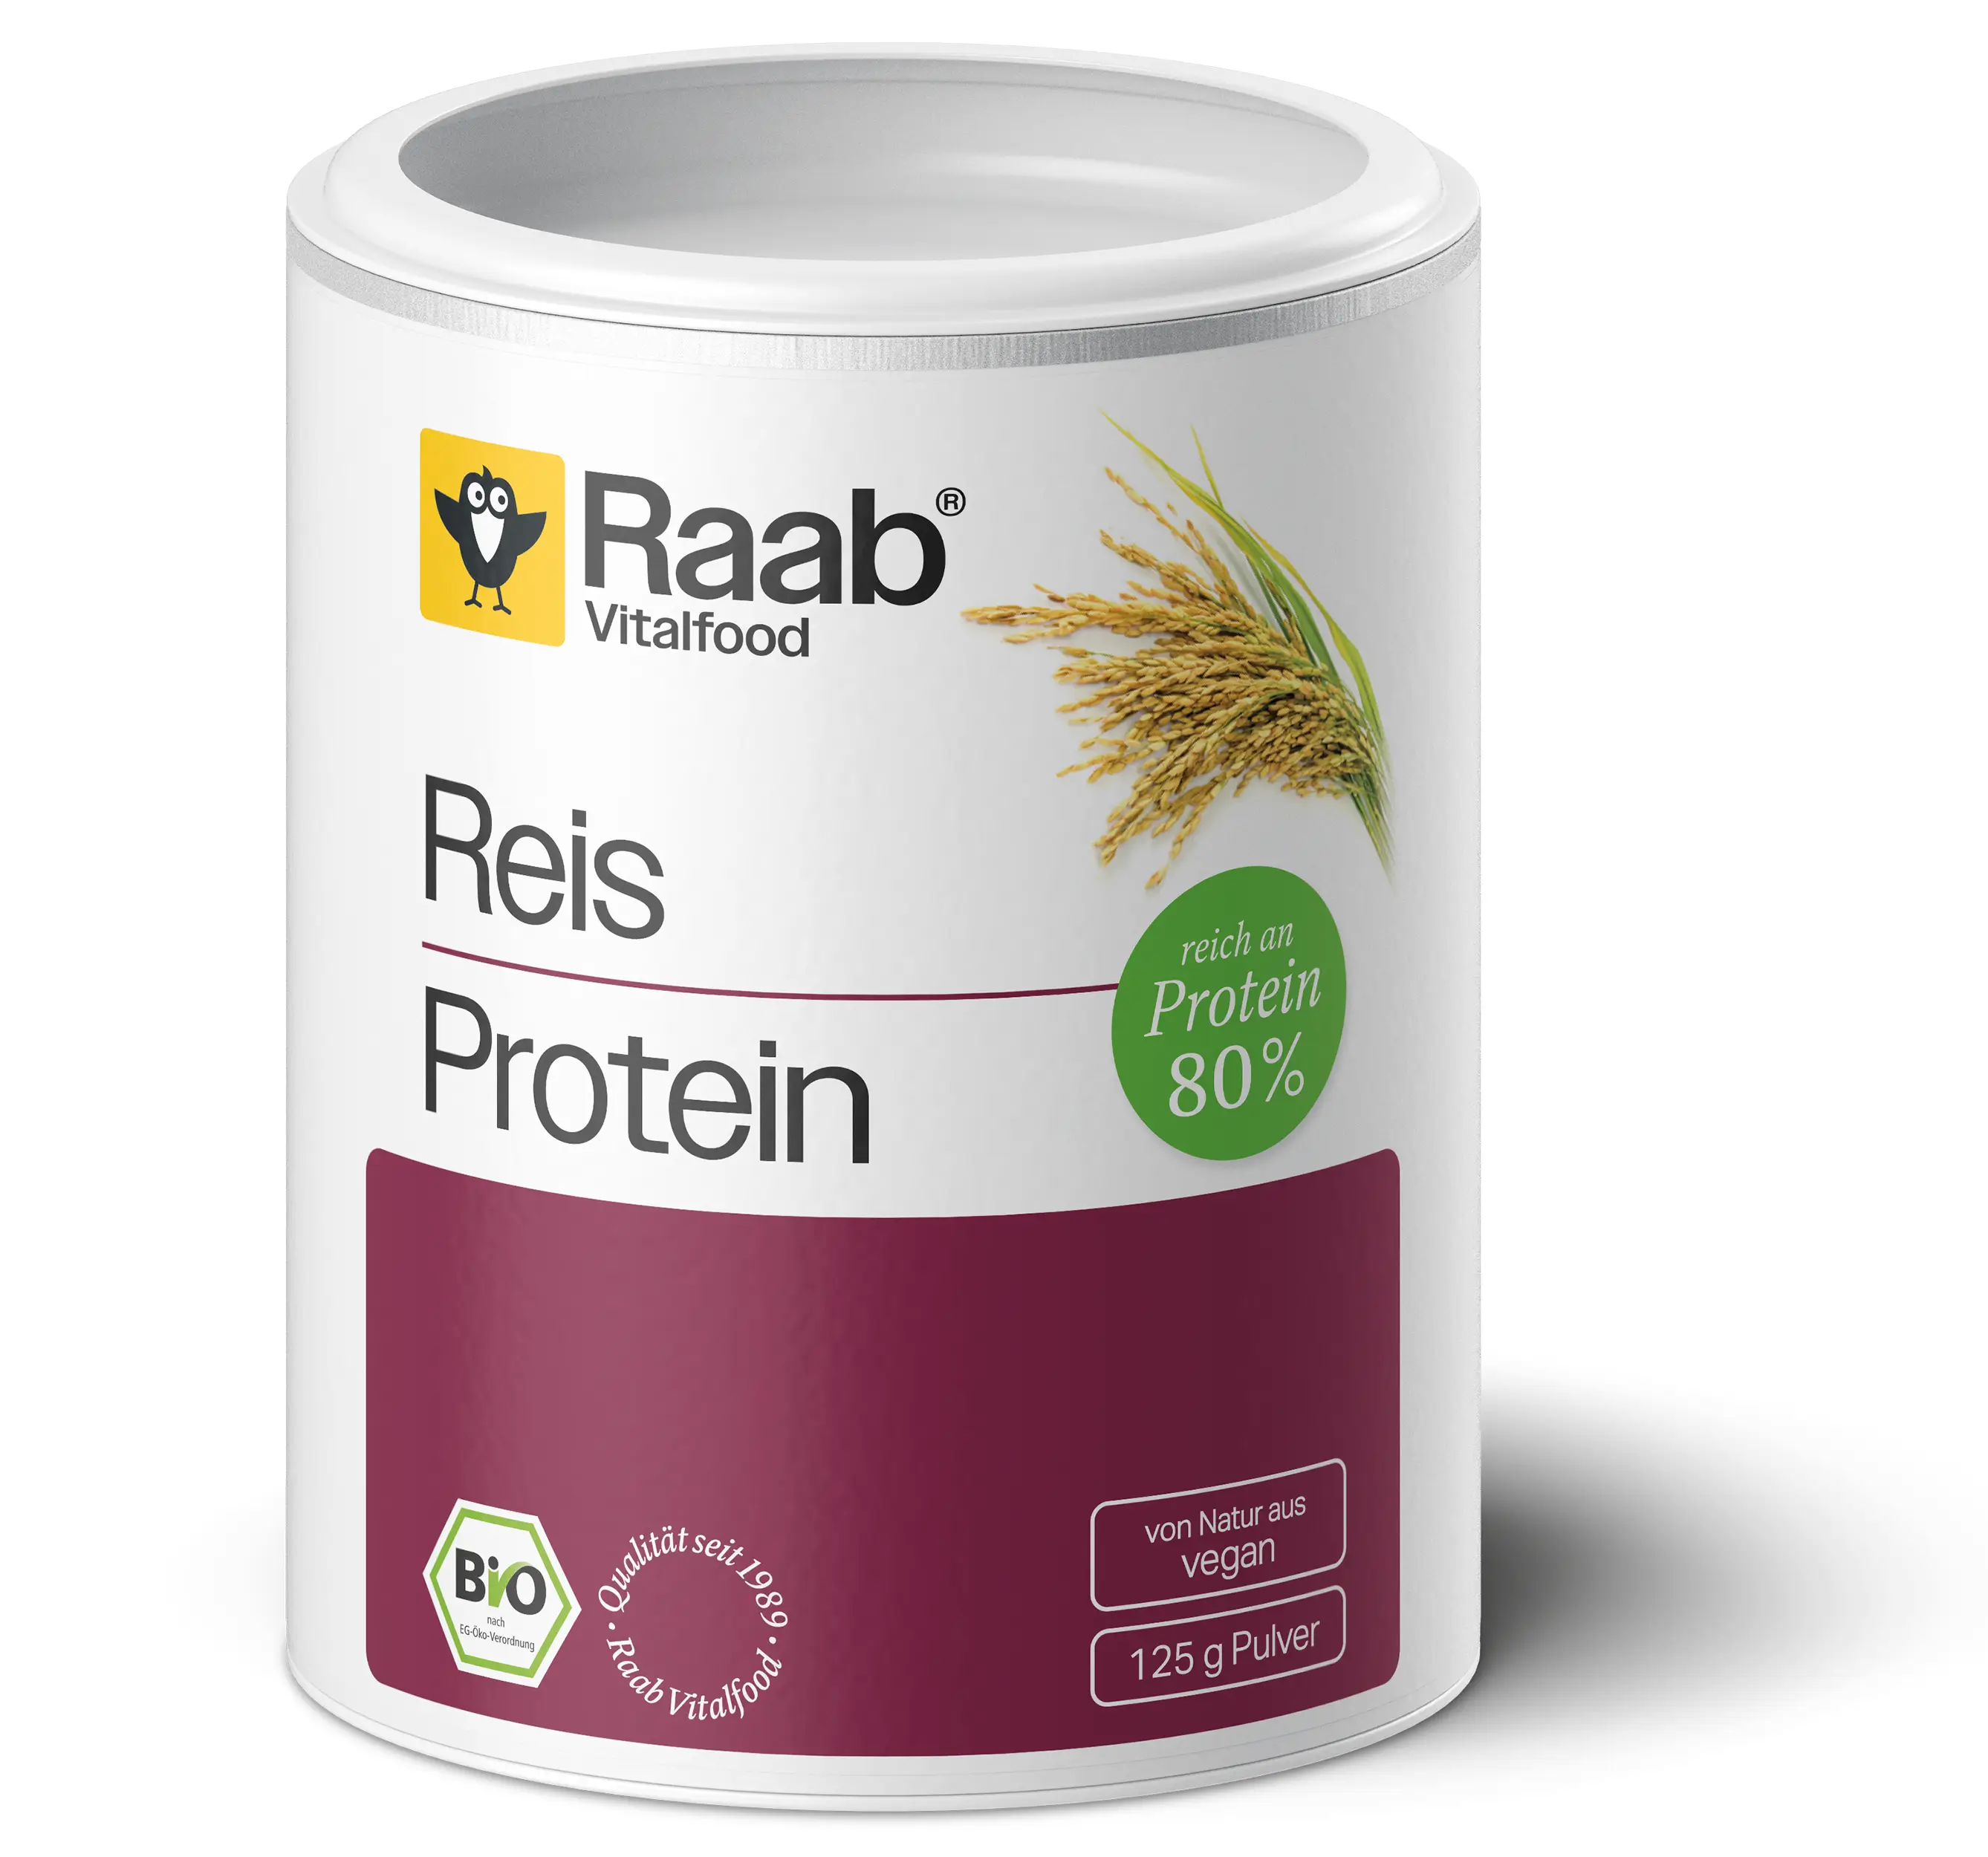 Bio Reis Protein Pulver